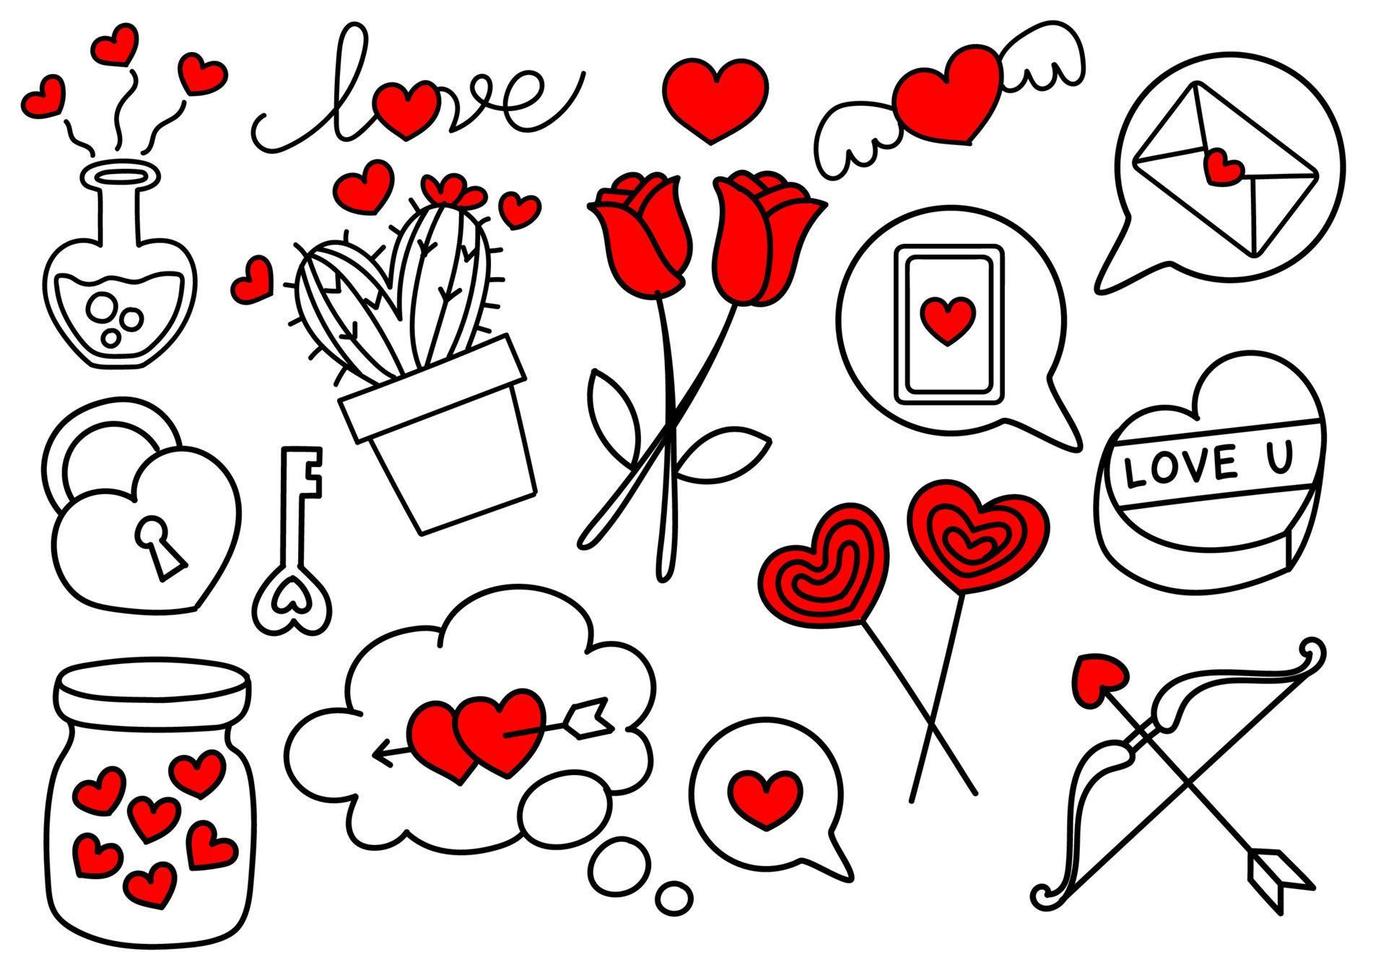 doodle de elementos del día de san valentín dibujados a mano alzada. vector premium